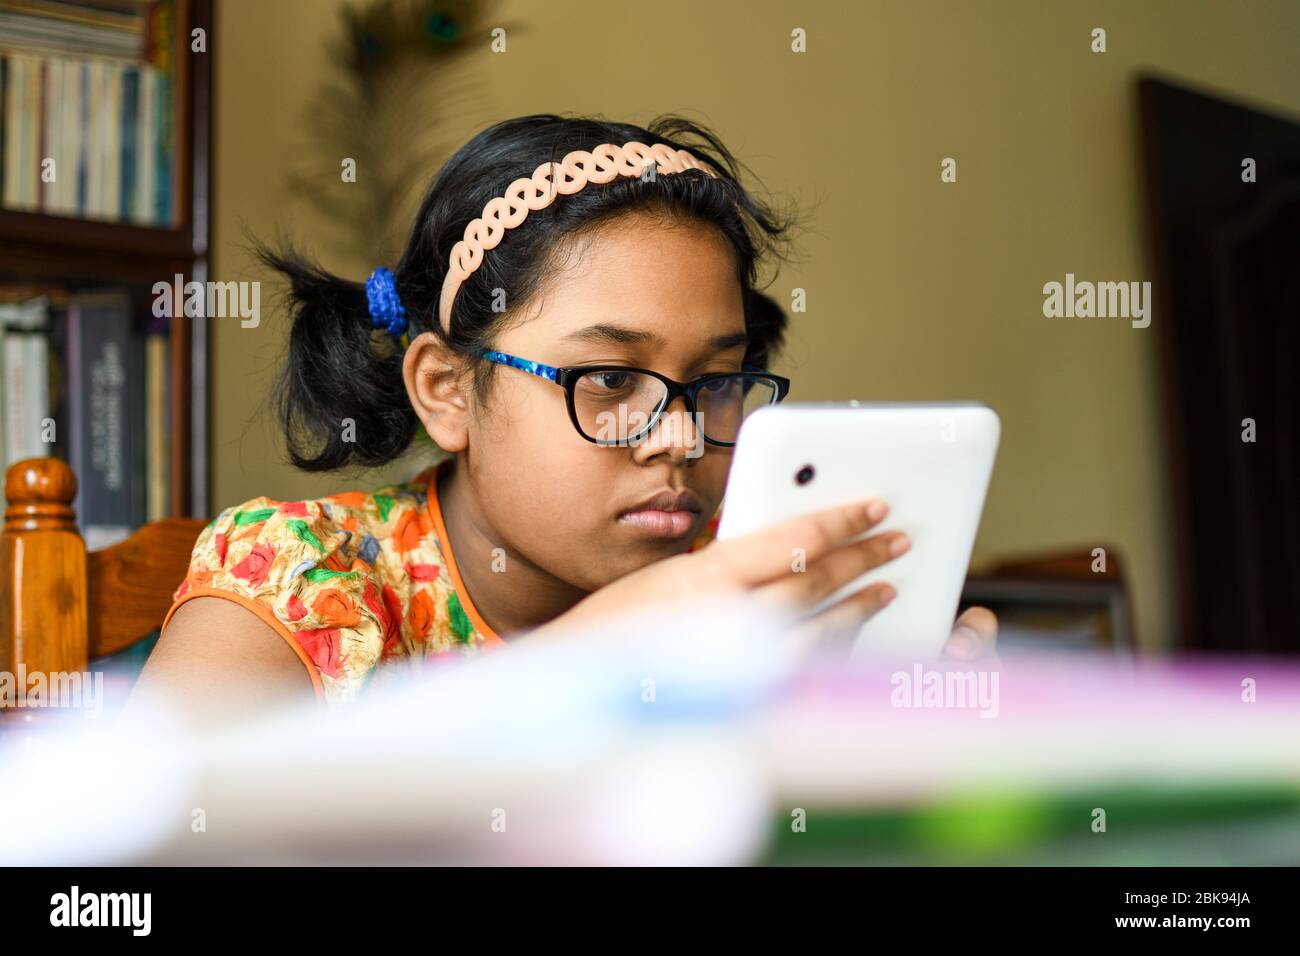 Ragazza indiana carina che studia a casa con un tablet mobile in mano Foto Stock